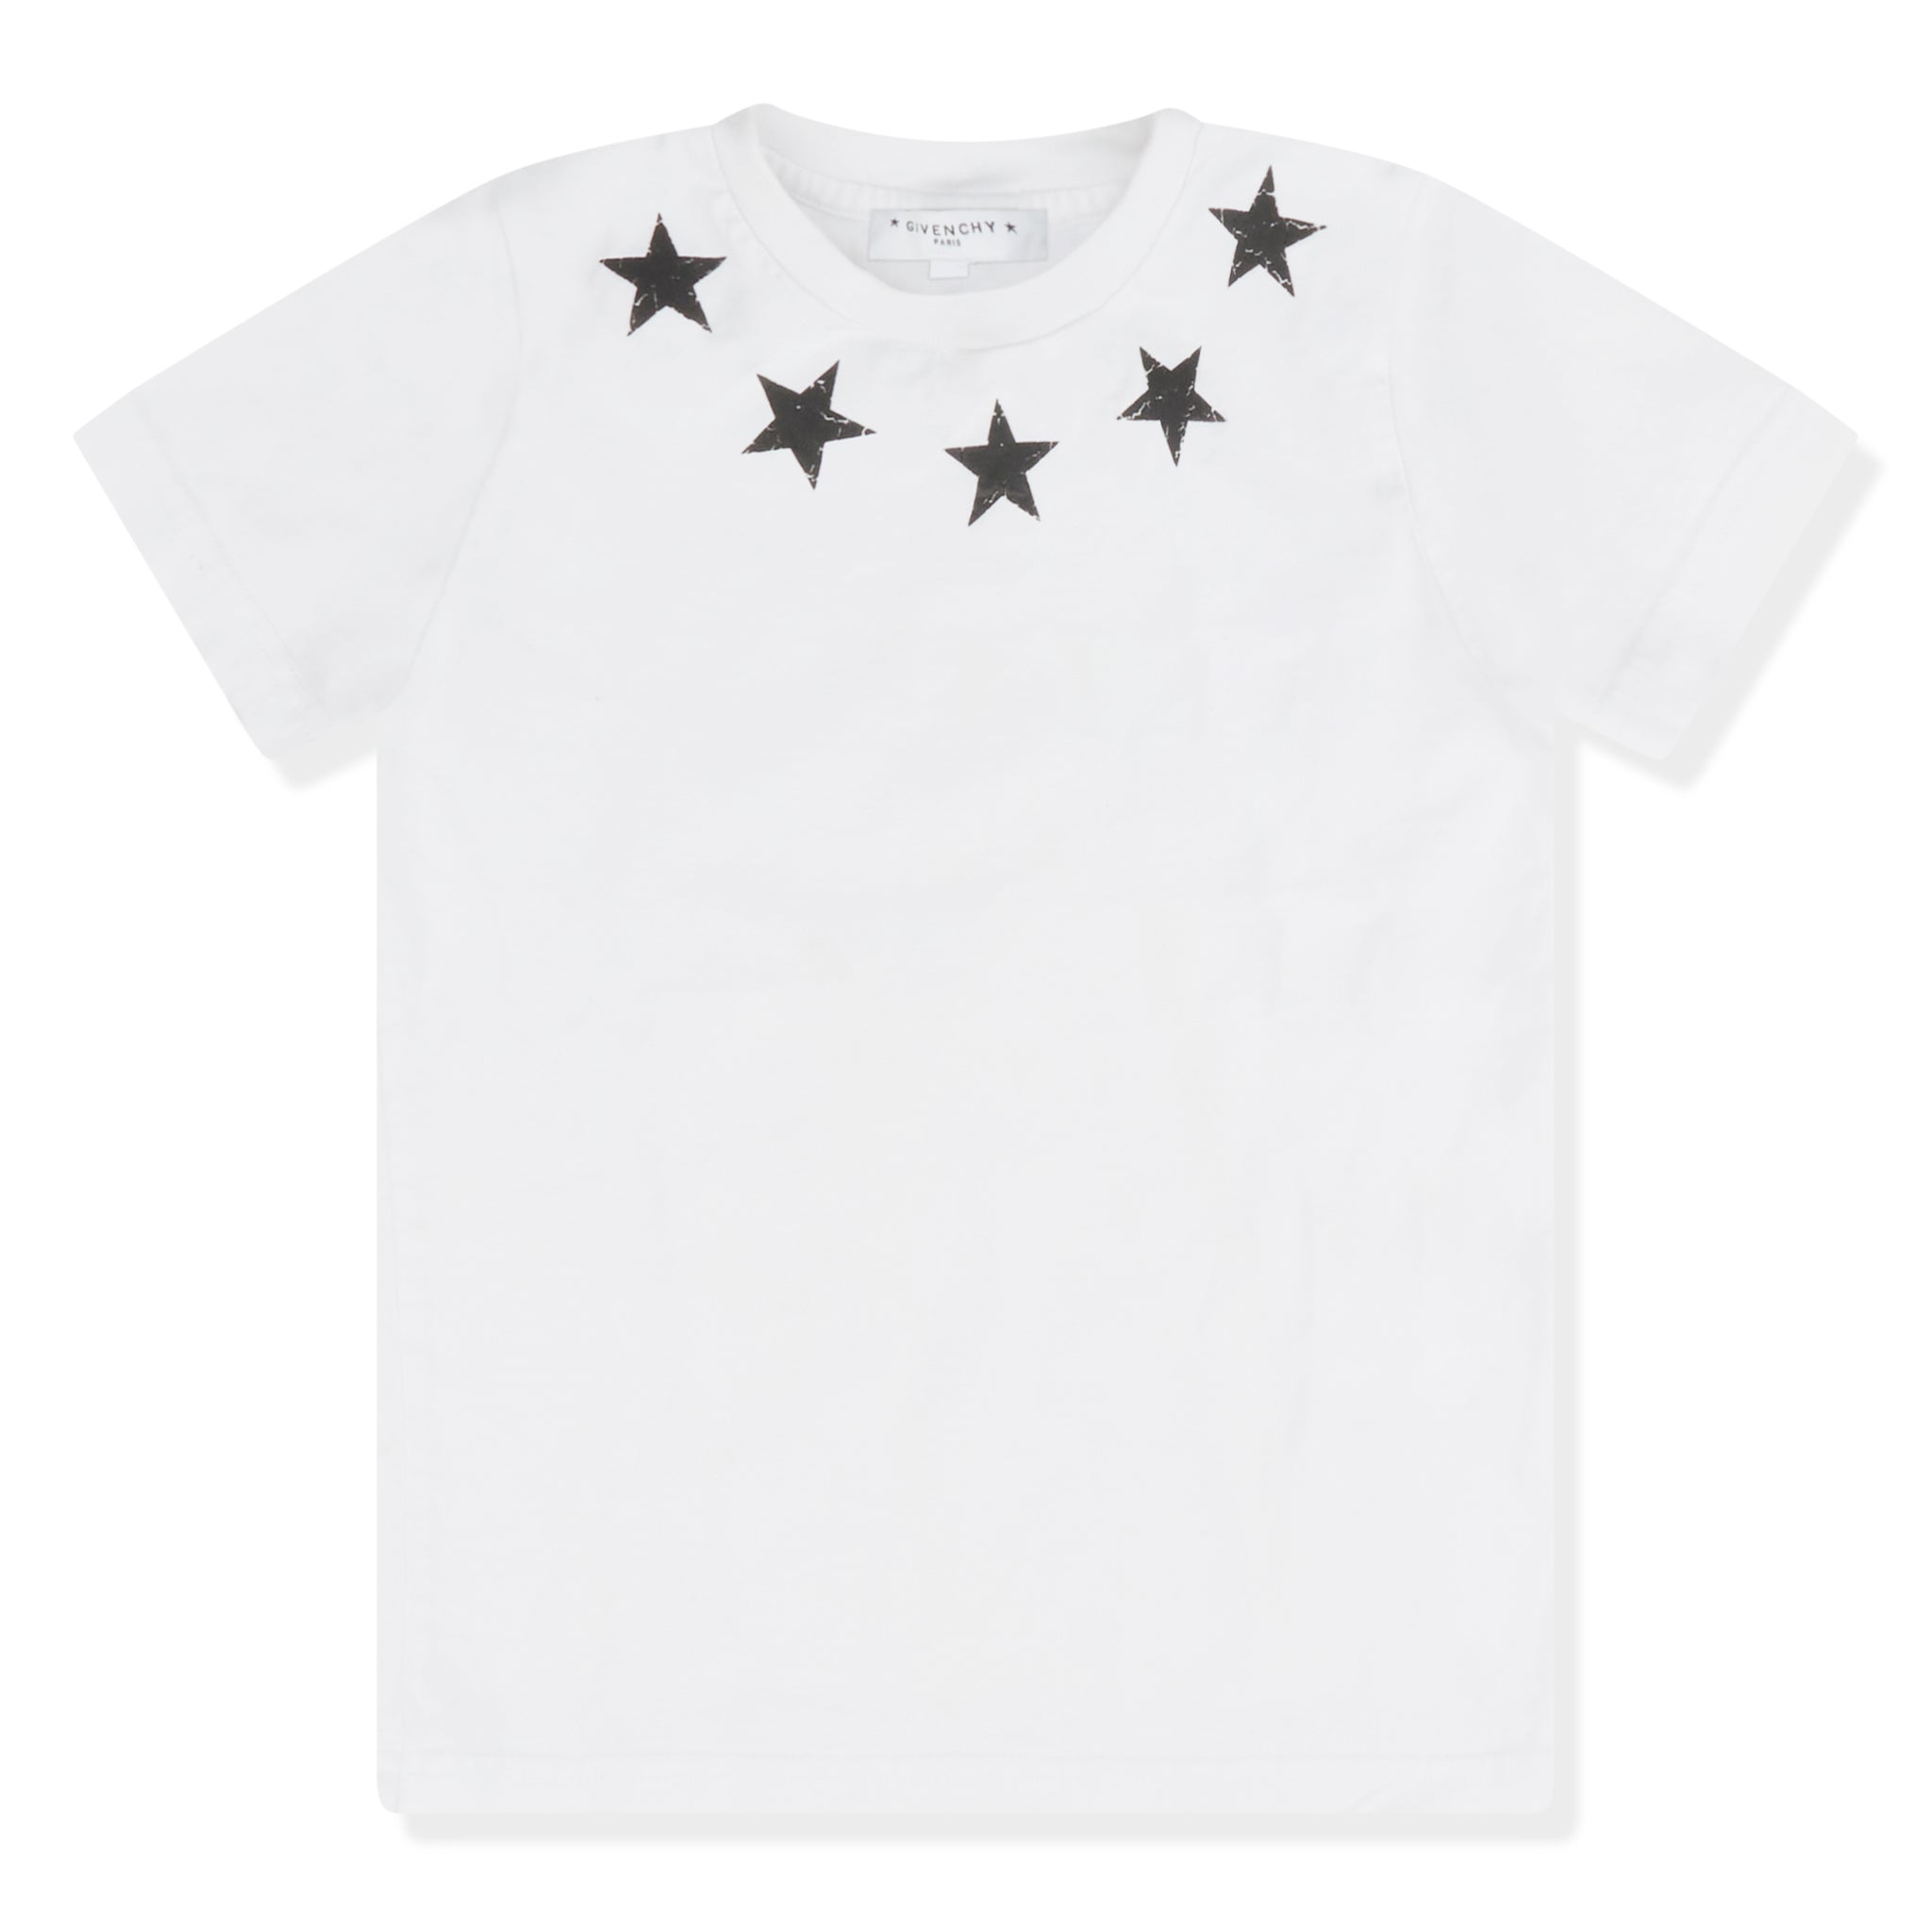 Louis Vuitton - Authenticated T-Shirt - Cotton White Plain for Men, Good Condition